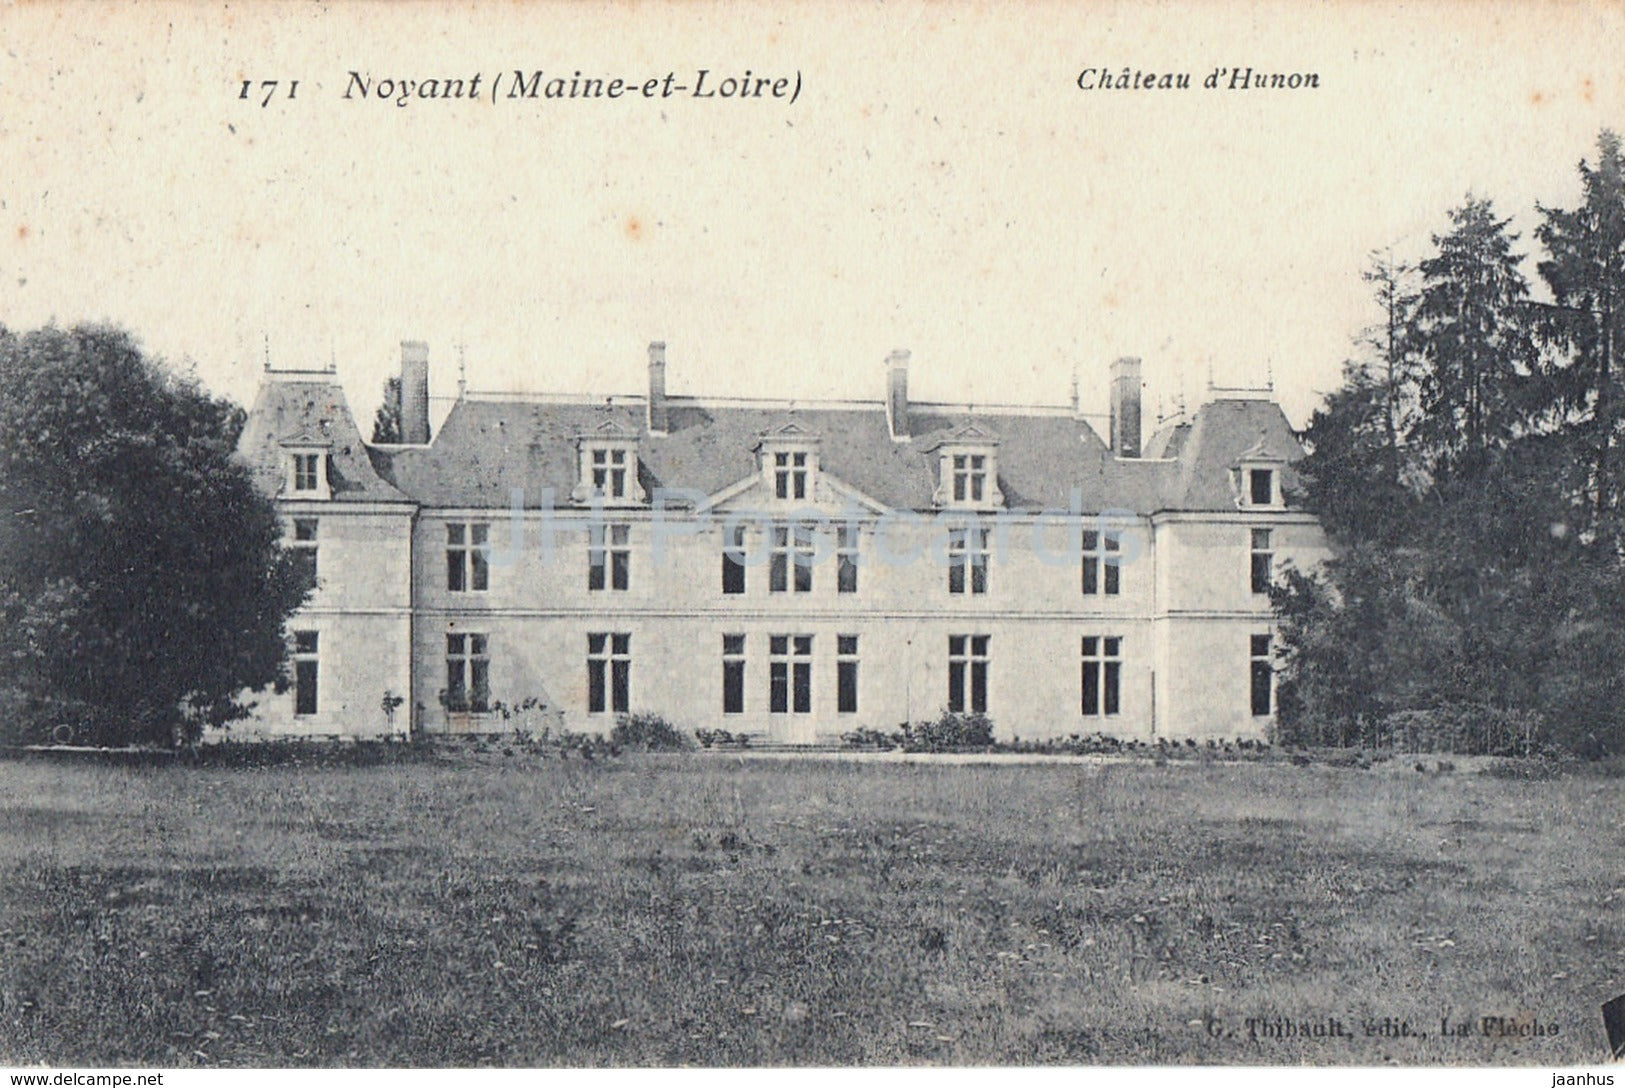 Noyant - Maine et Loire - Chateau d'Hunon - castle - 8 - old postcard - France - used